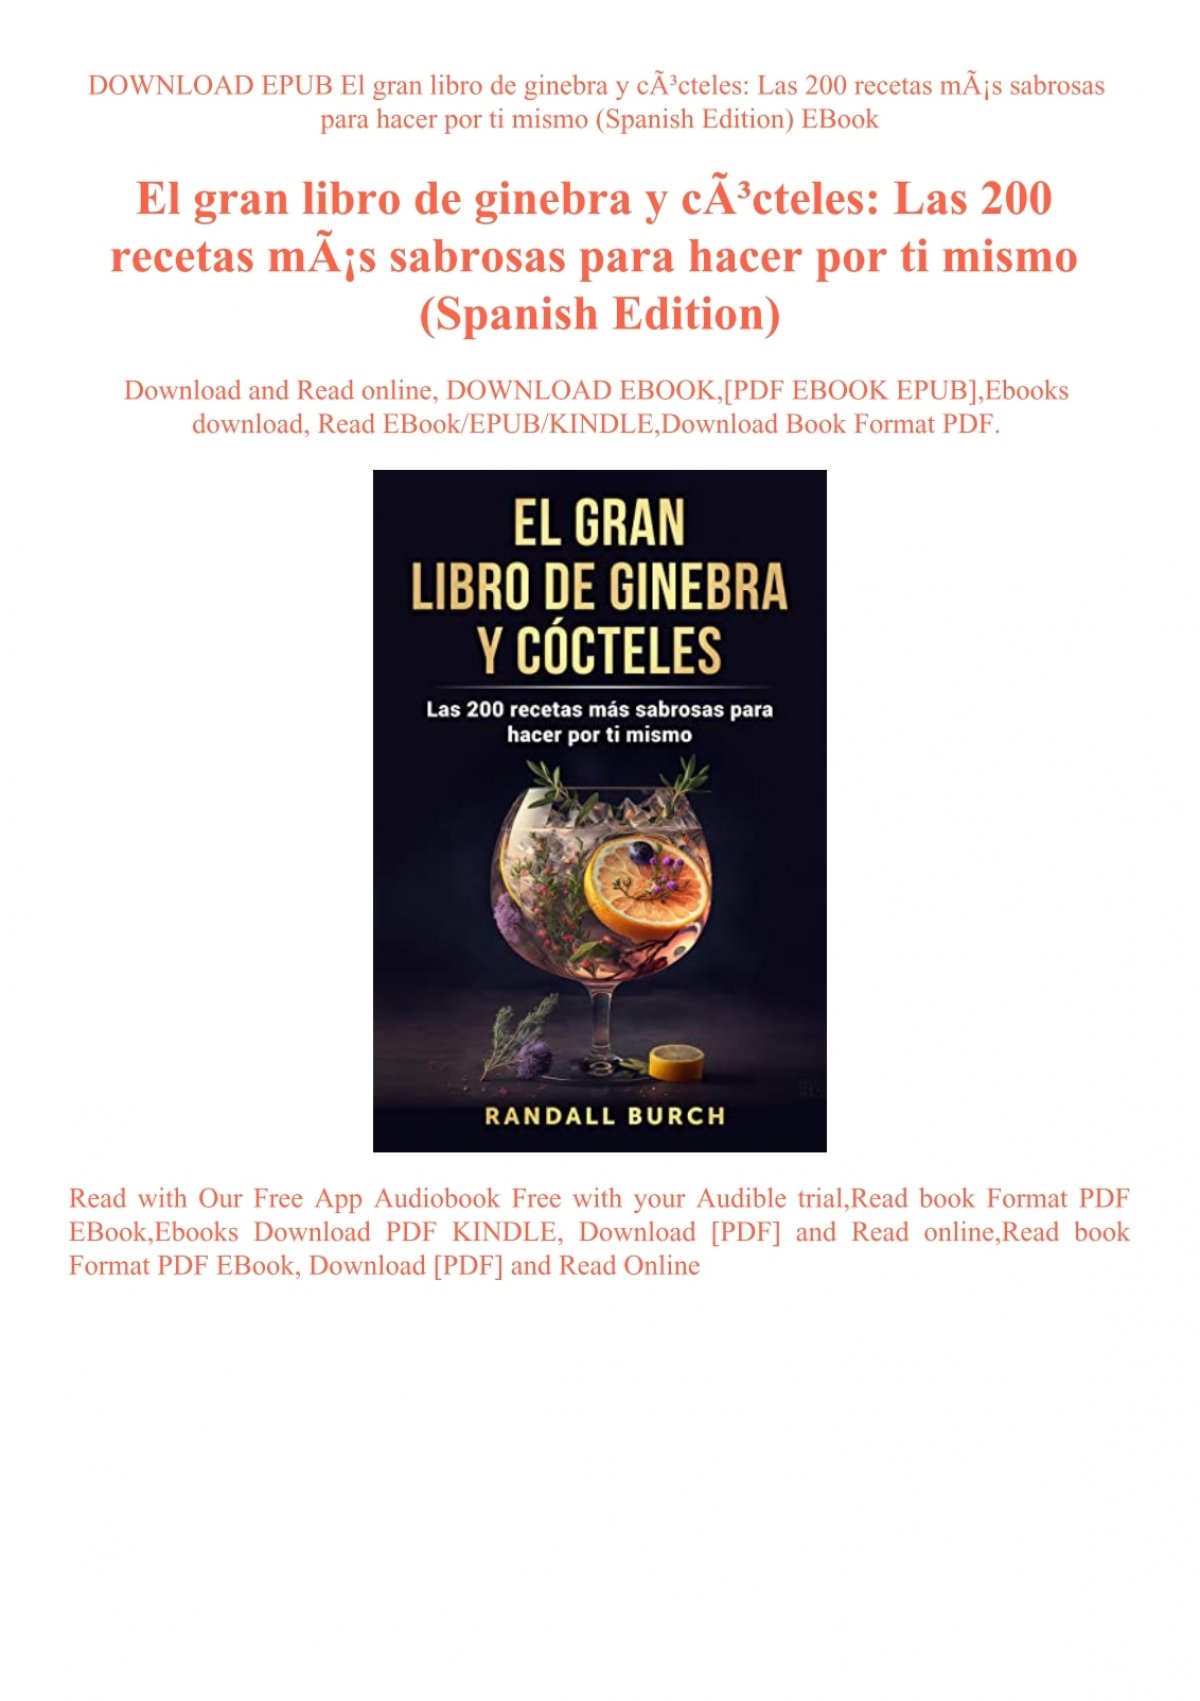 DOWNLOAD EPUB El gran libro de ginebra y Las 200 mÃƒÂ¡s sabrosas para hacer ti mismo (Spanish Edition) EBook